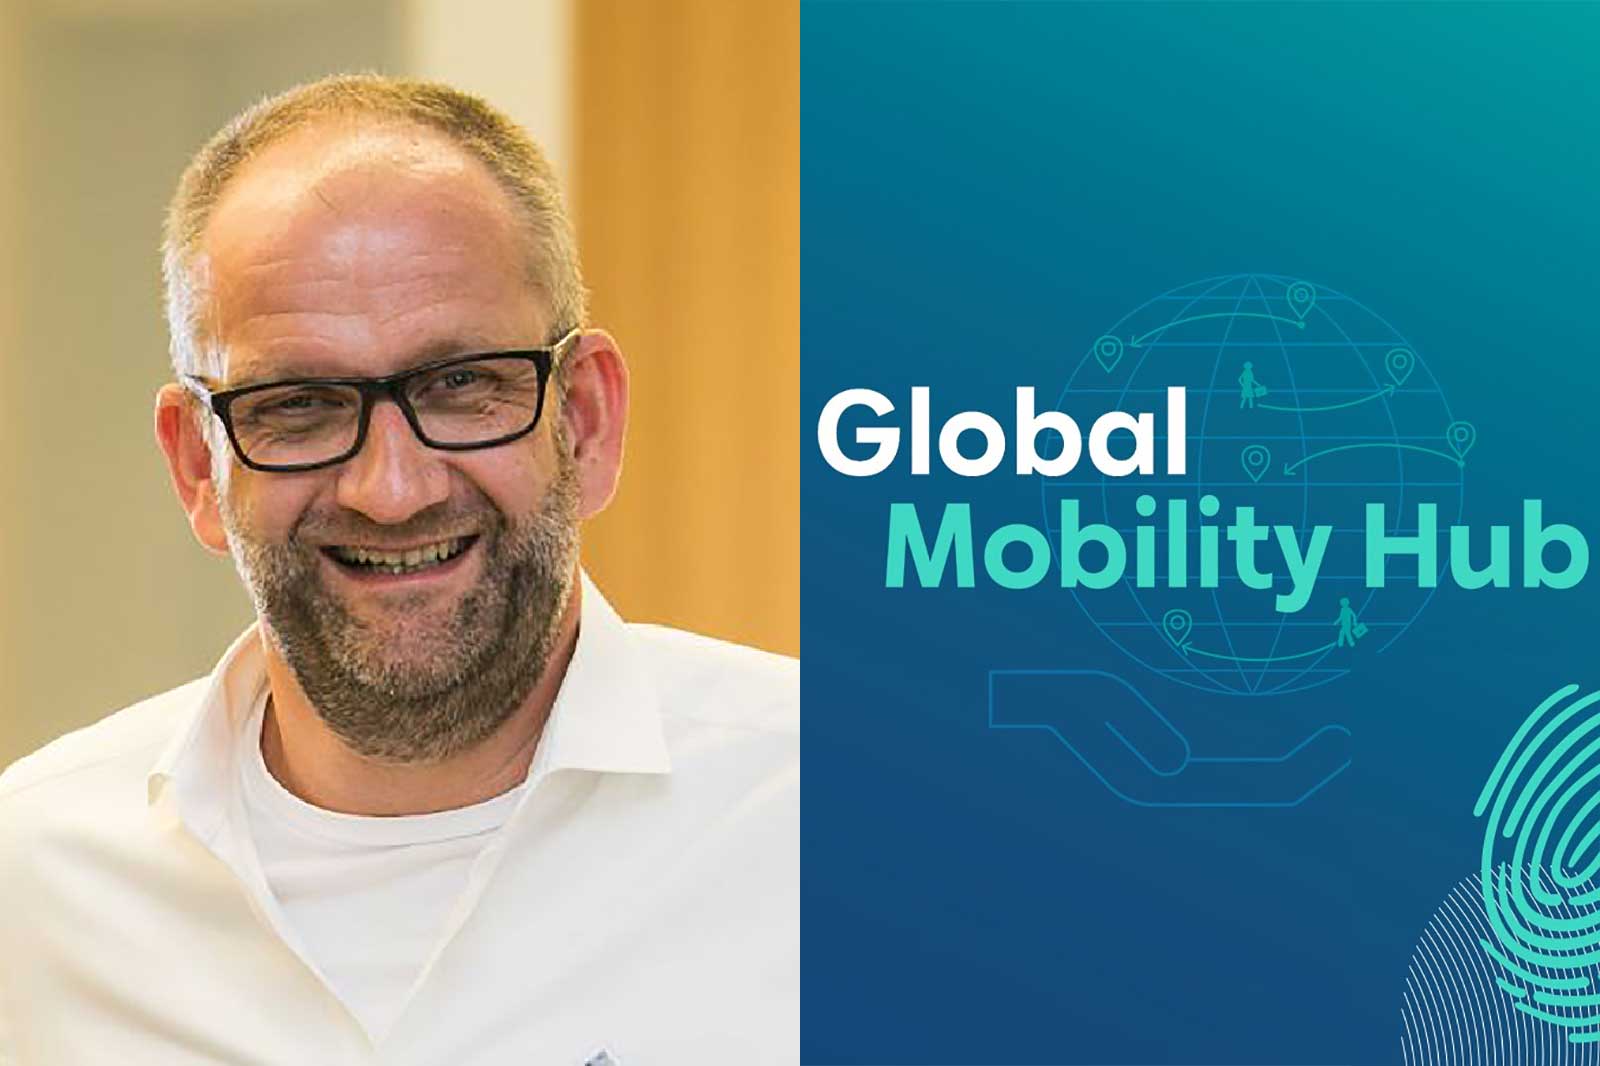 Eric, Head of the RWE Global Mobility Hub